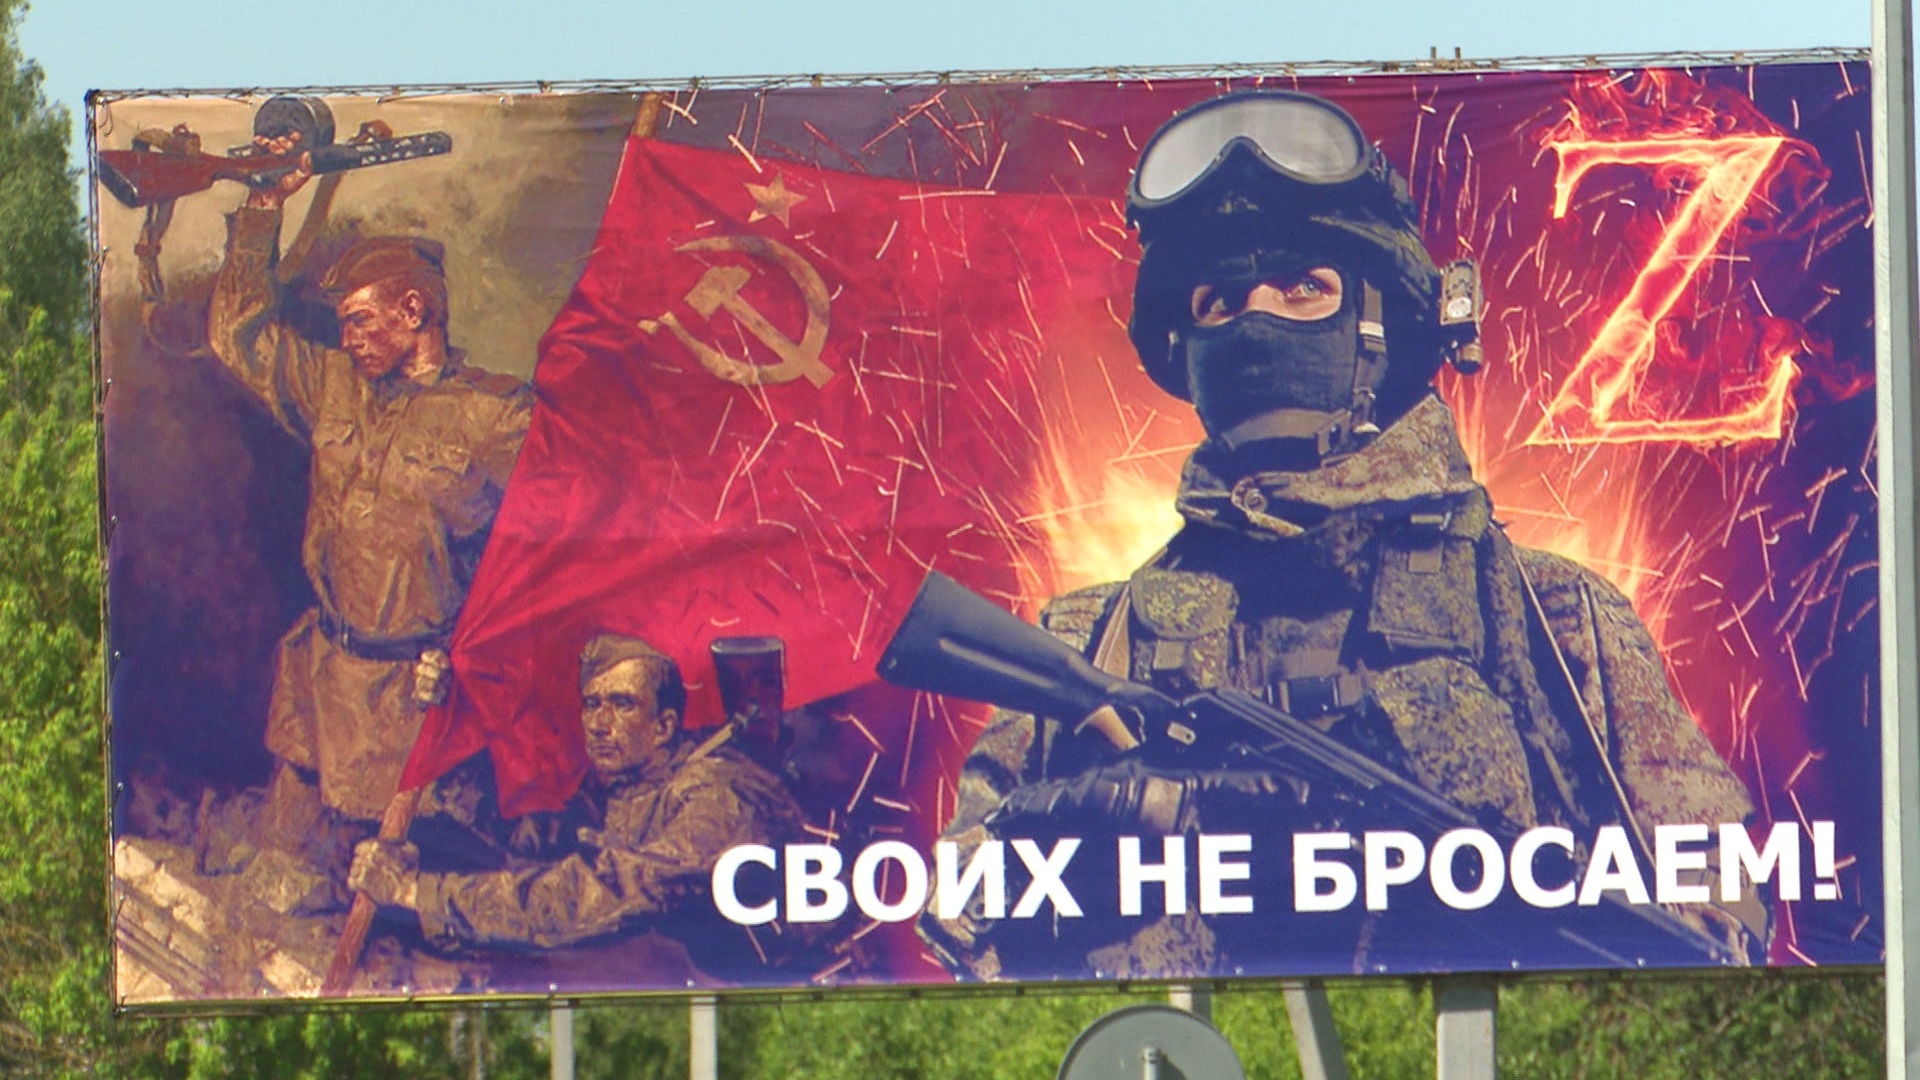 Баннер в поддержку Российской армии